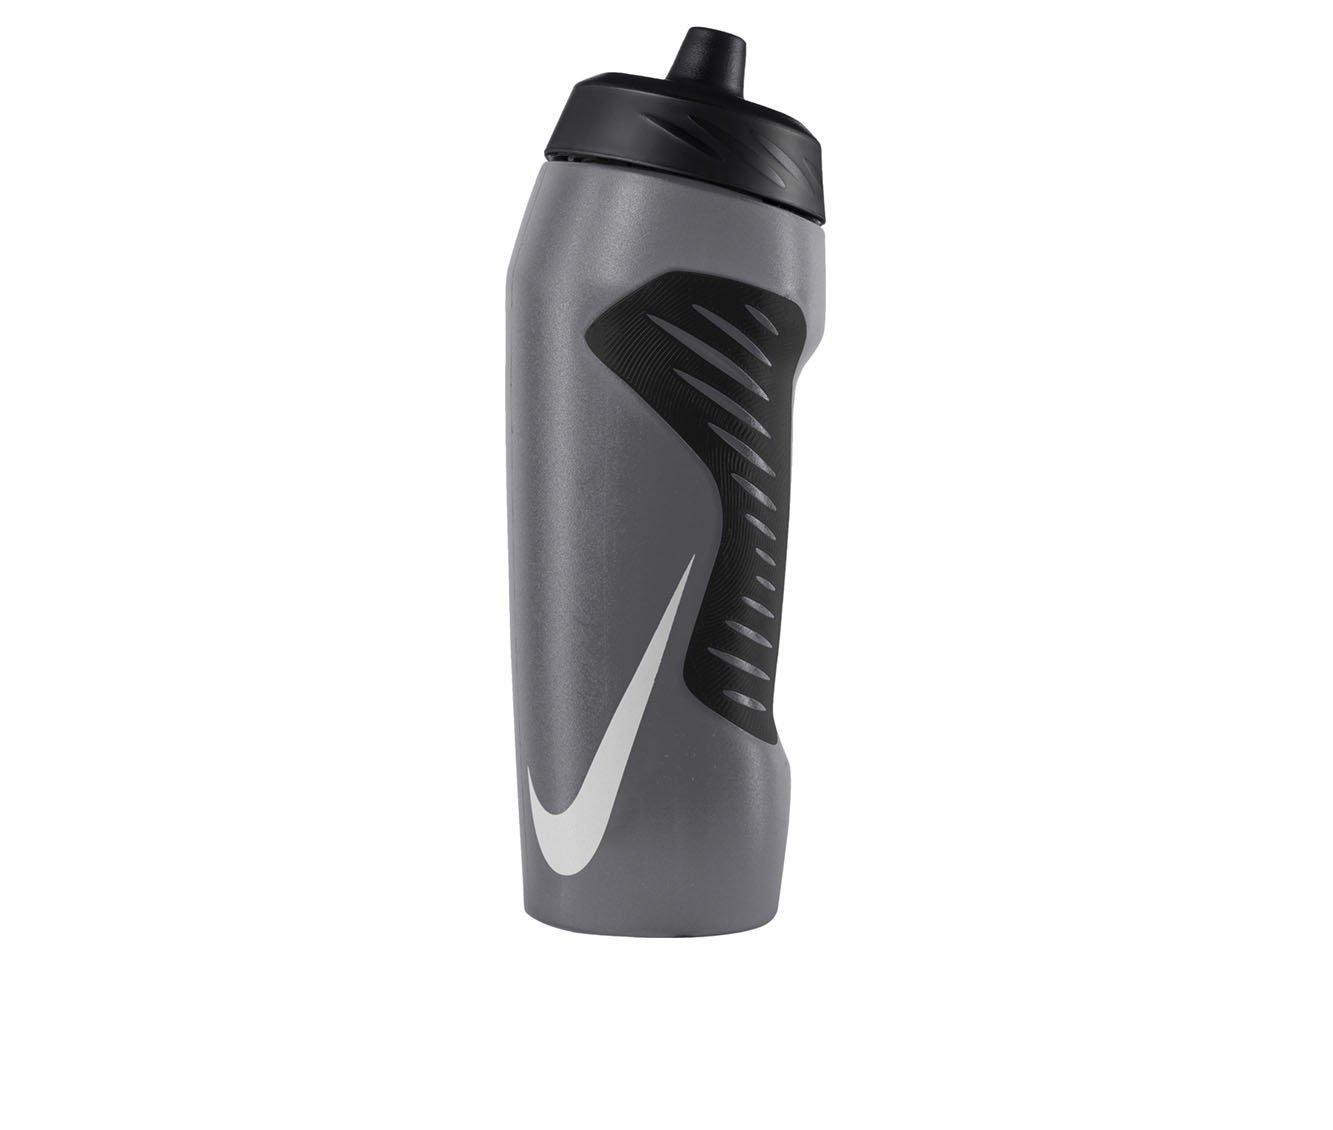 Nike Hyperfuel Water Bottle at Von Maur